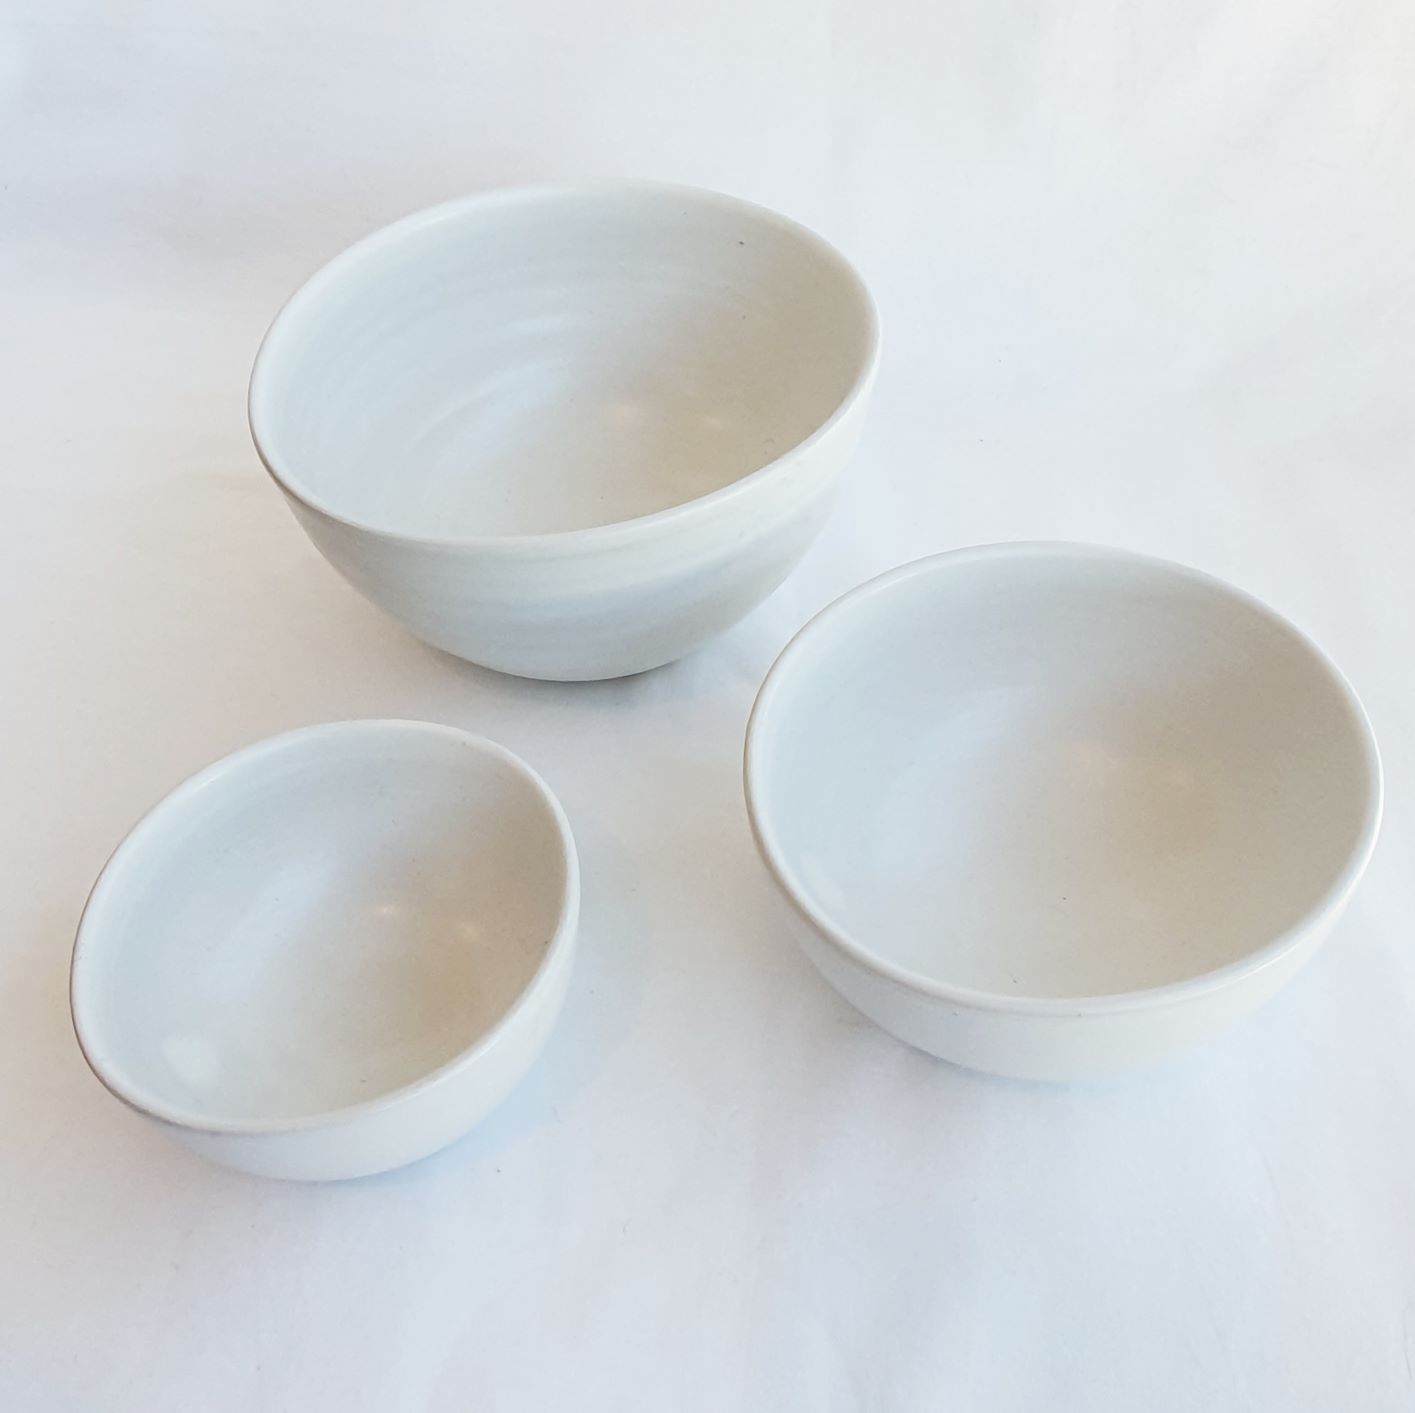 Ceramic Nesting Bowls - Aboriginal design - White